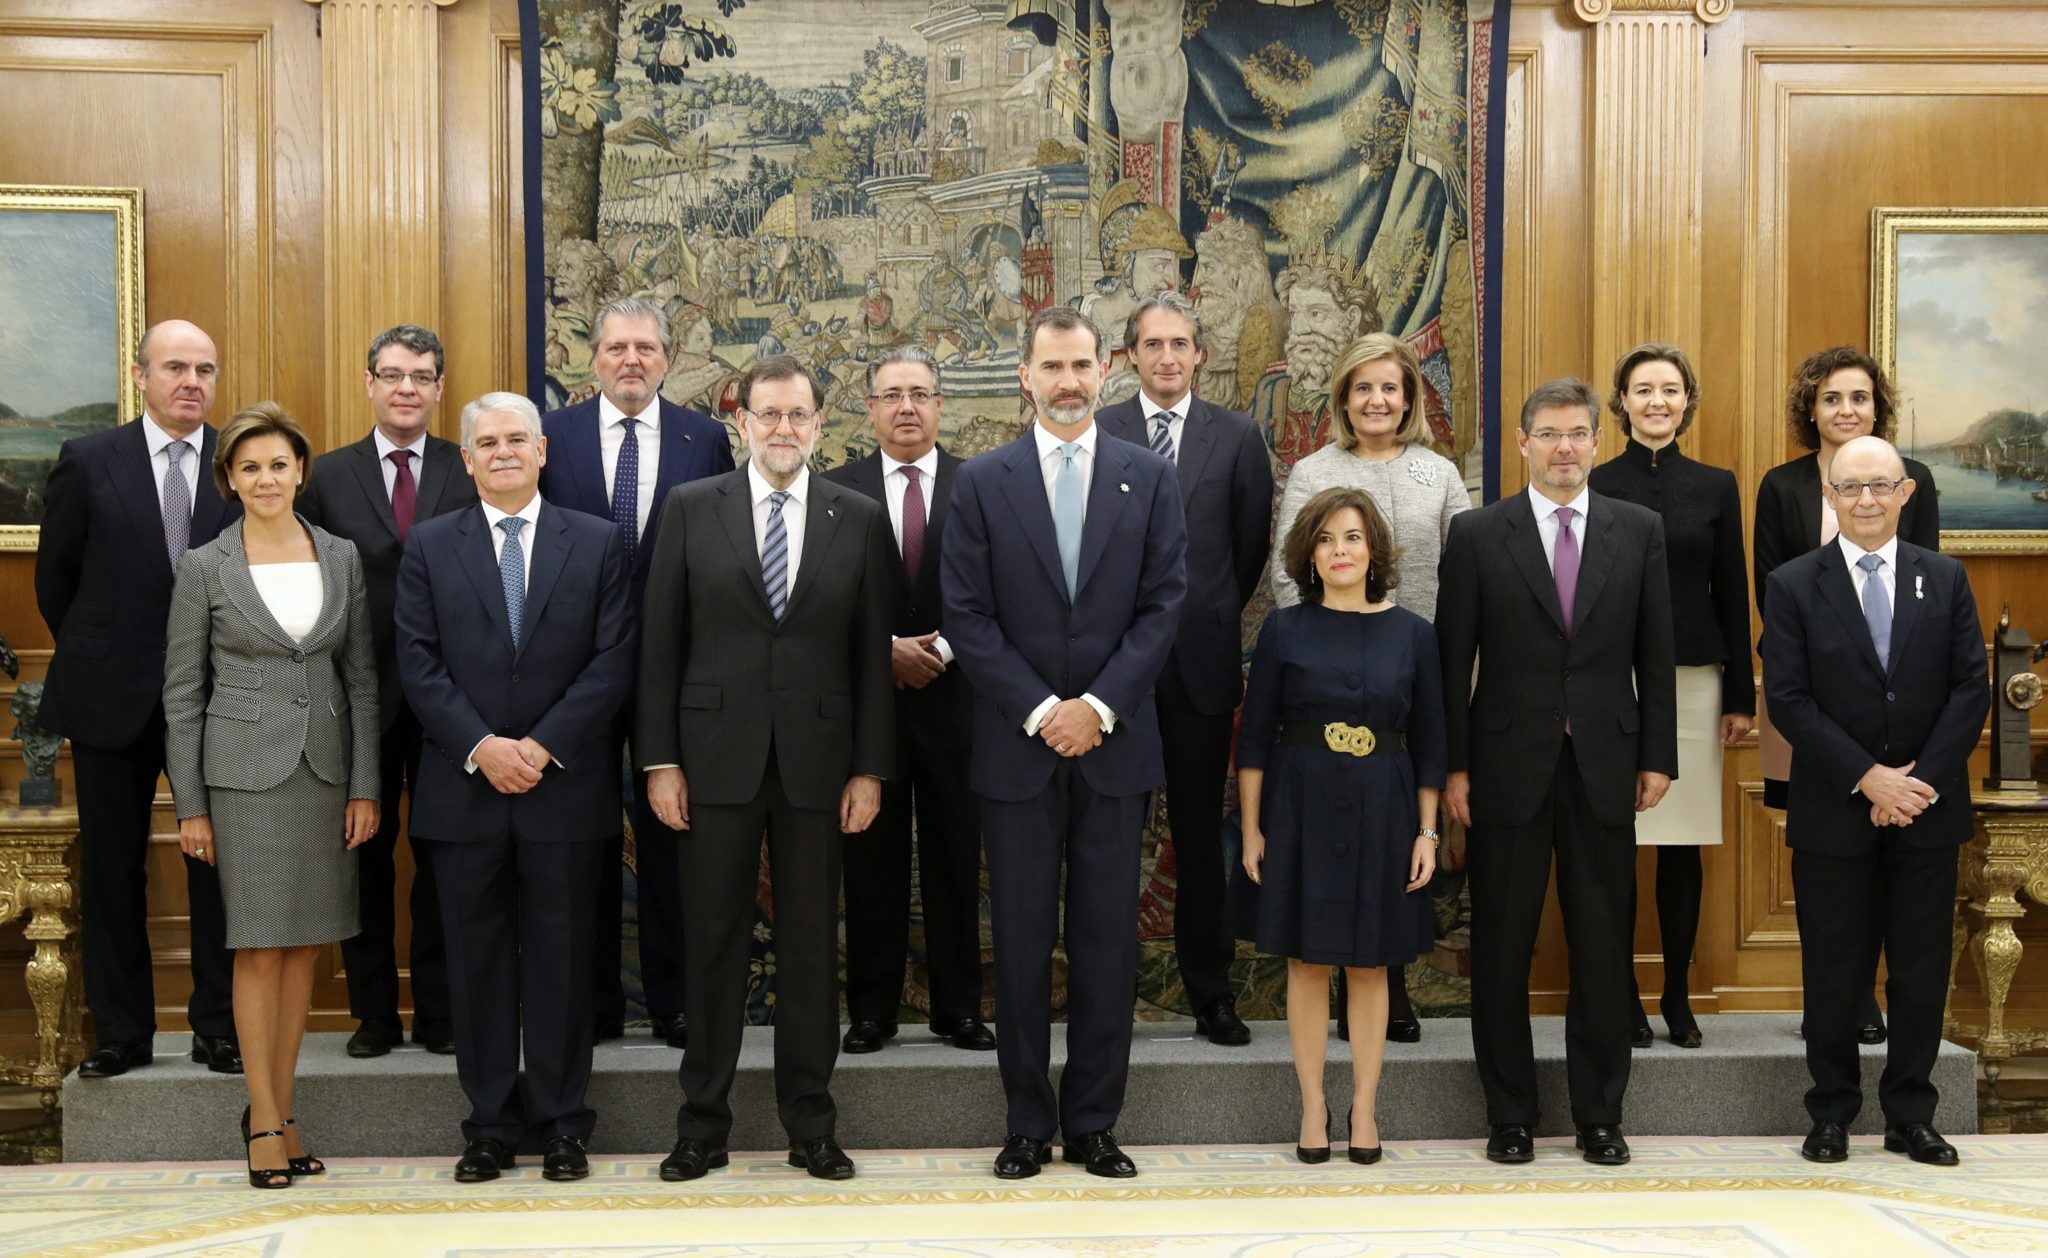 Hiszpański król Filip VI wraz z członkami nowego rządu.  Fot. EPA/ANGEL DIAZ / POOL 